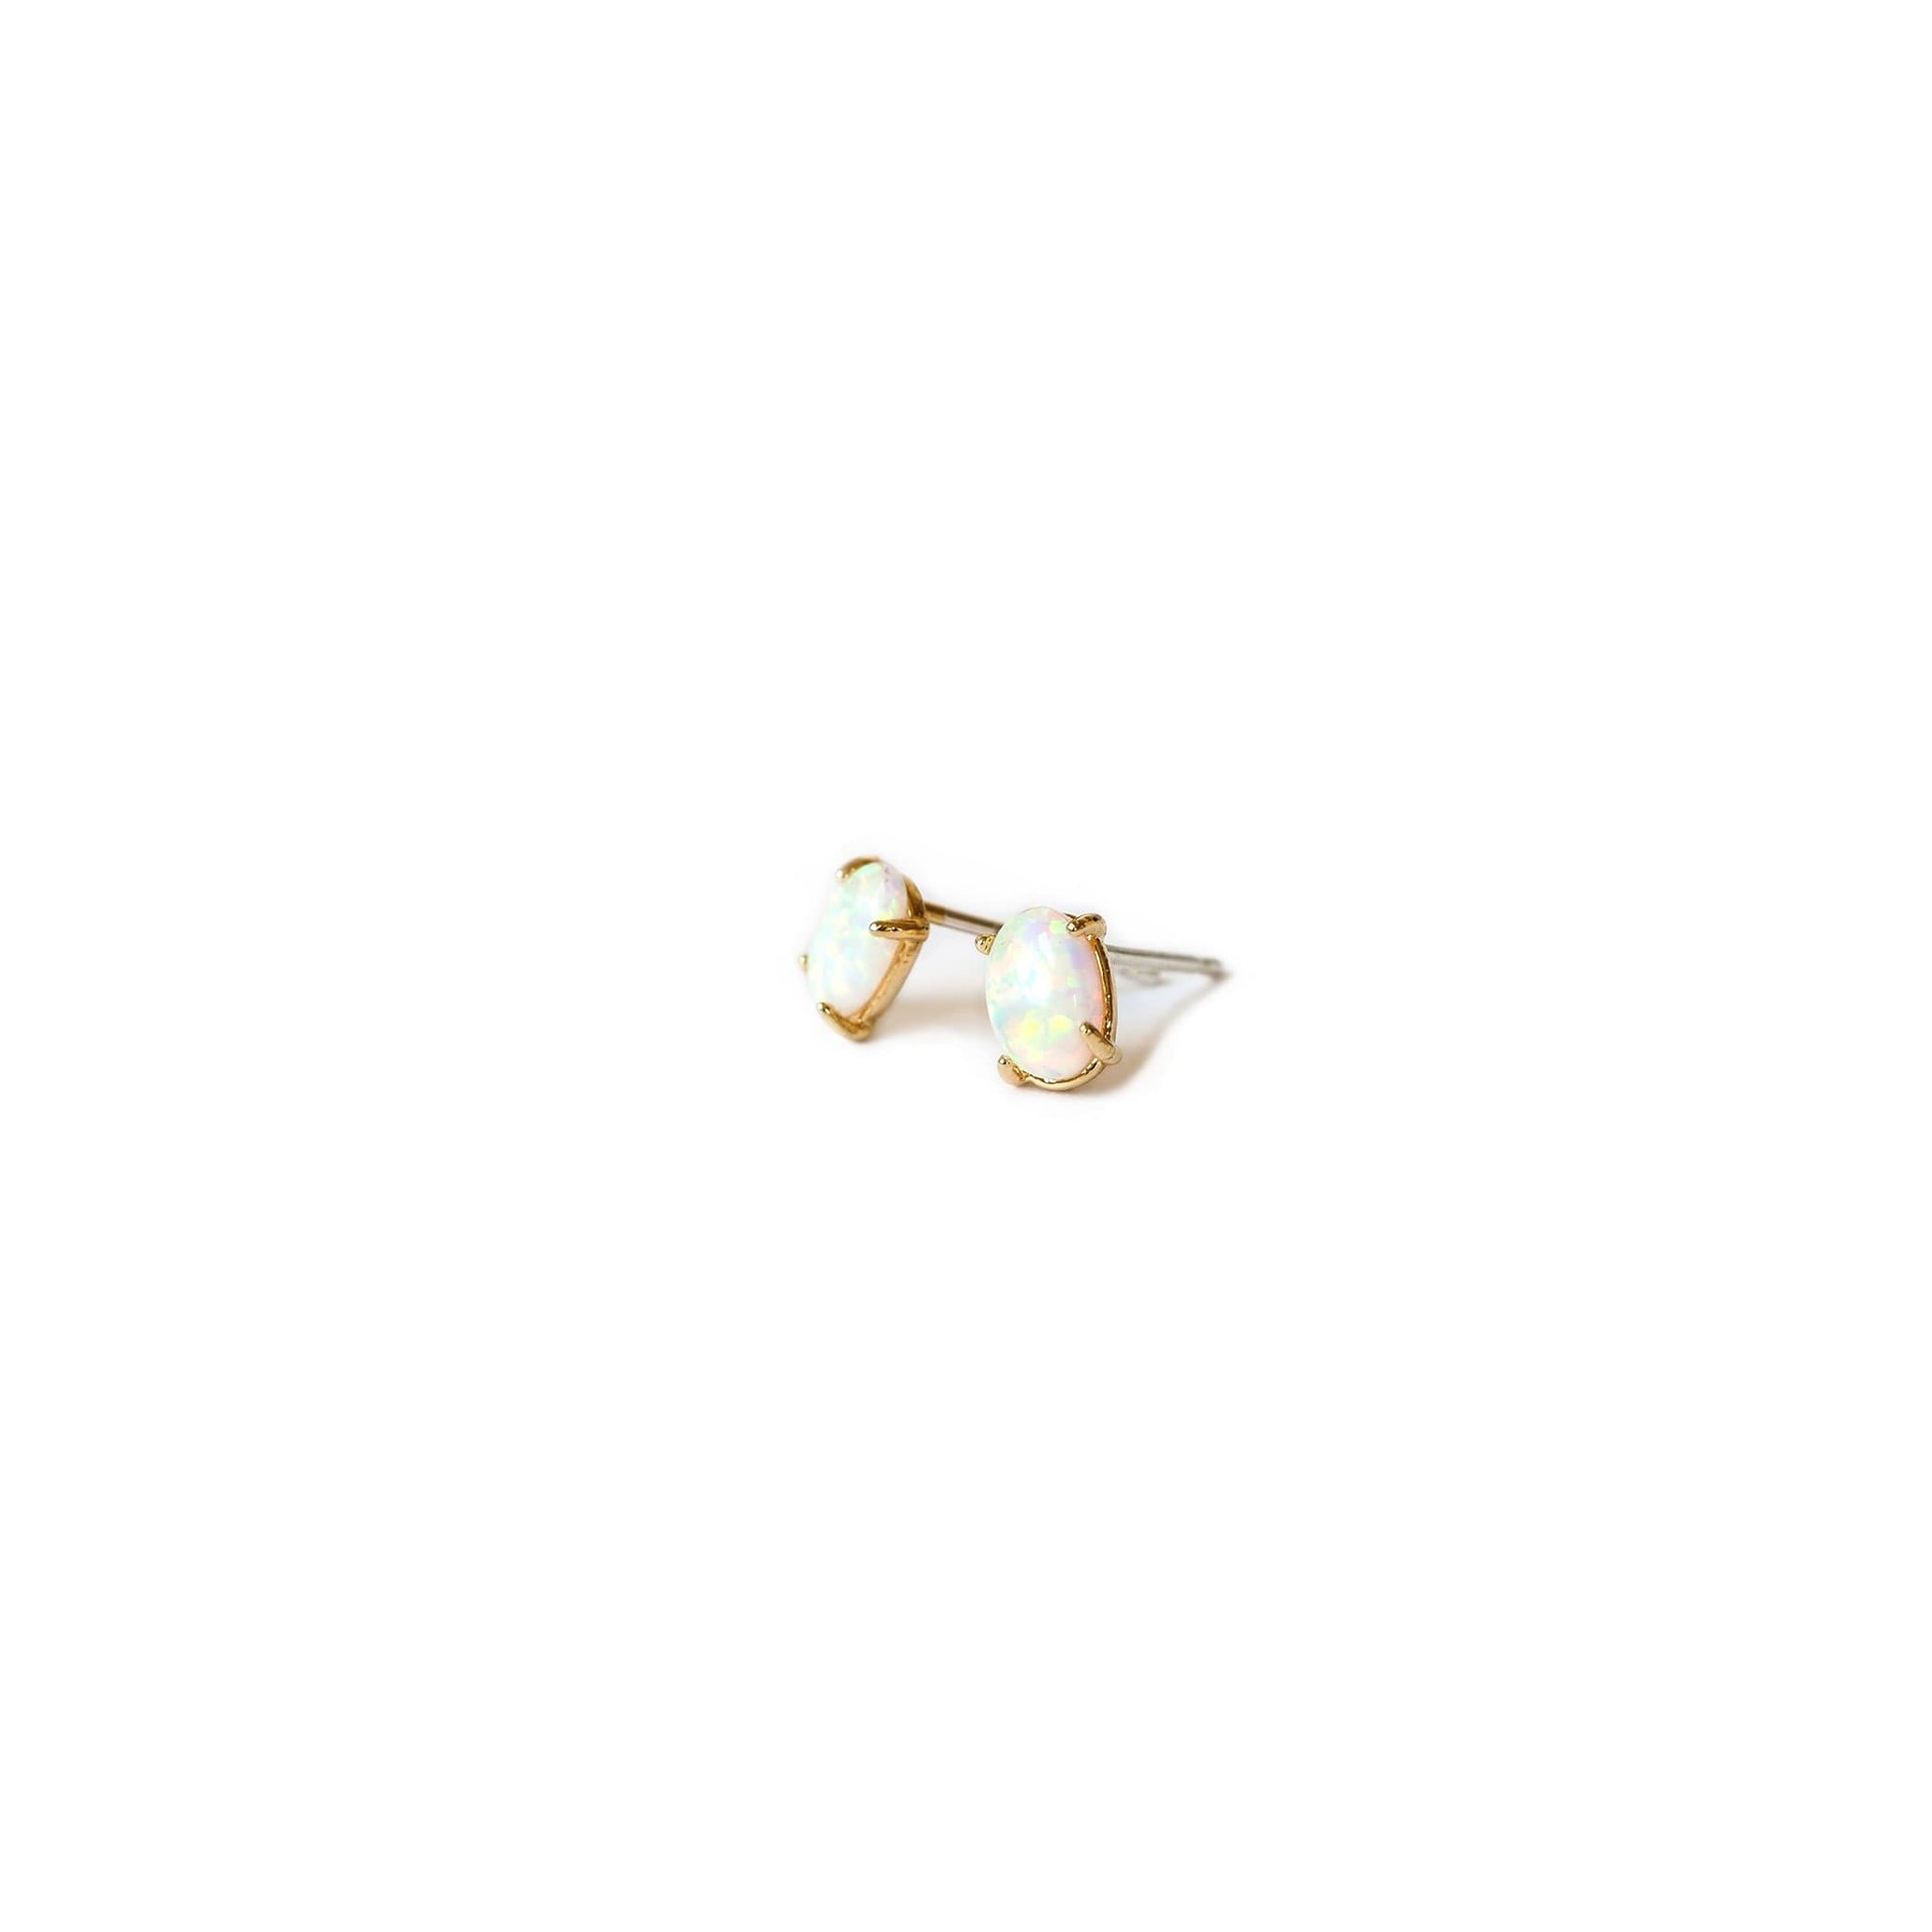  Single Opal Stud Earring, Earrings, adorn512, adorn512